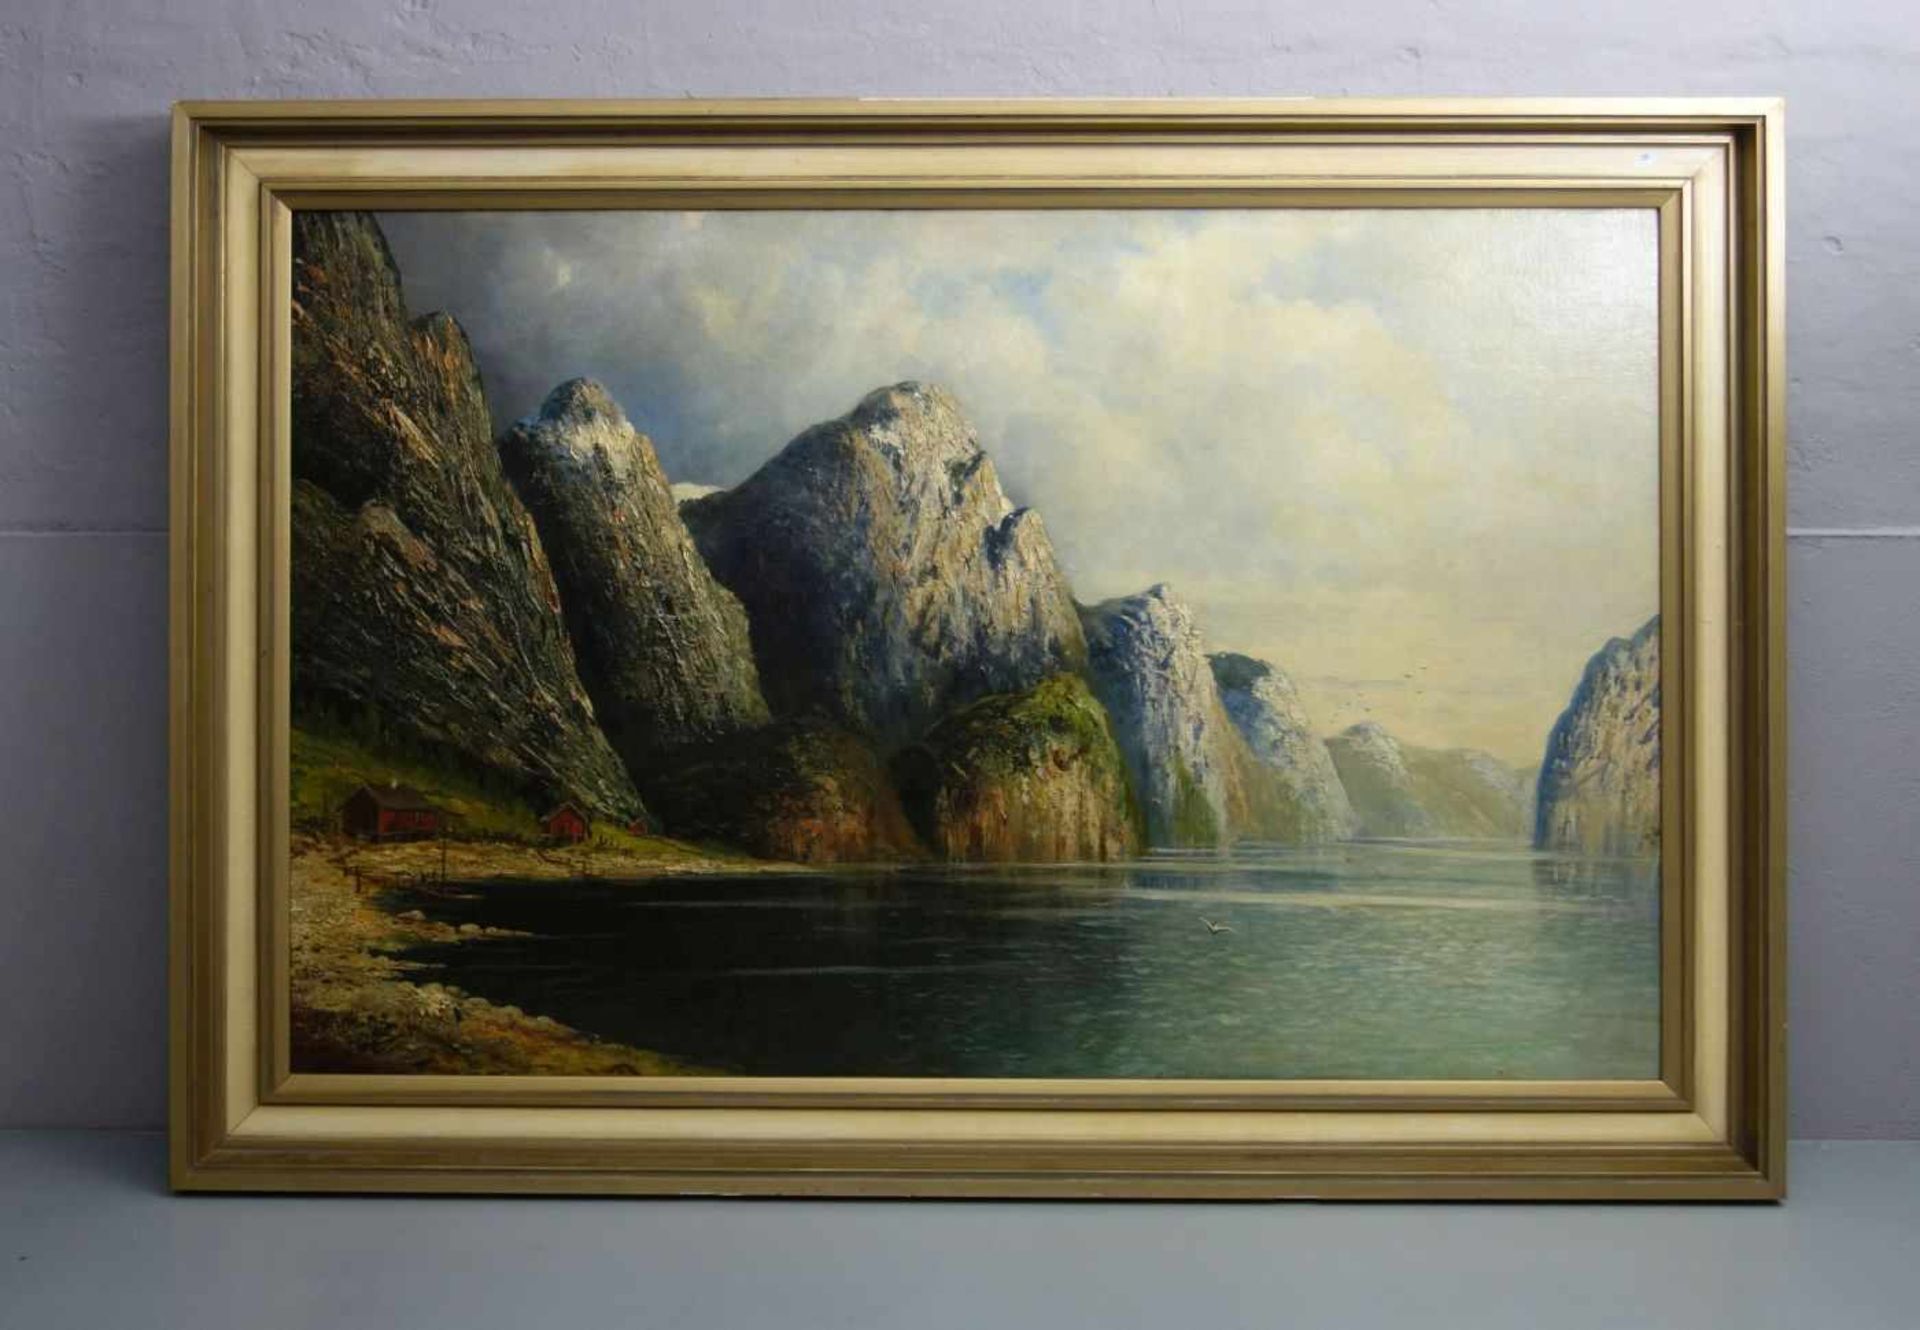 CHRISTENSEN, J. C. (norwegischer Landschaftsmaler des 19. Jh.), Gemälde / painting: "Norwegische